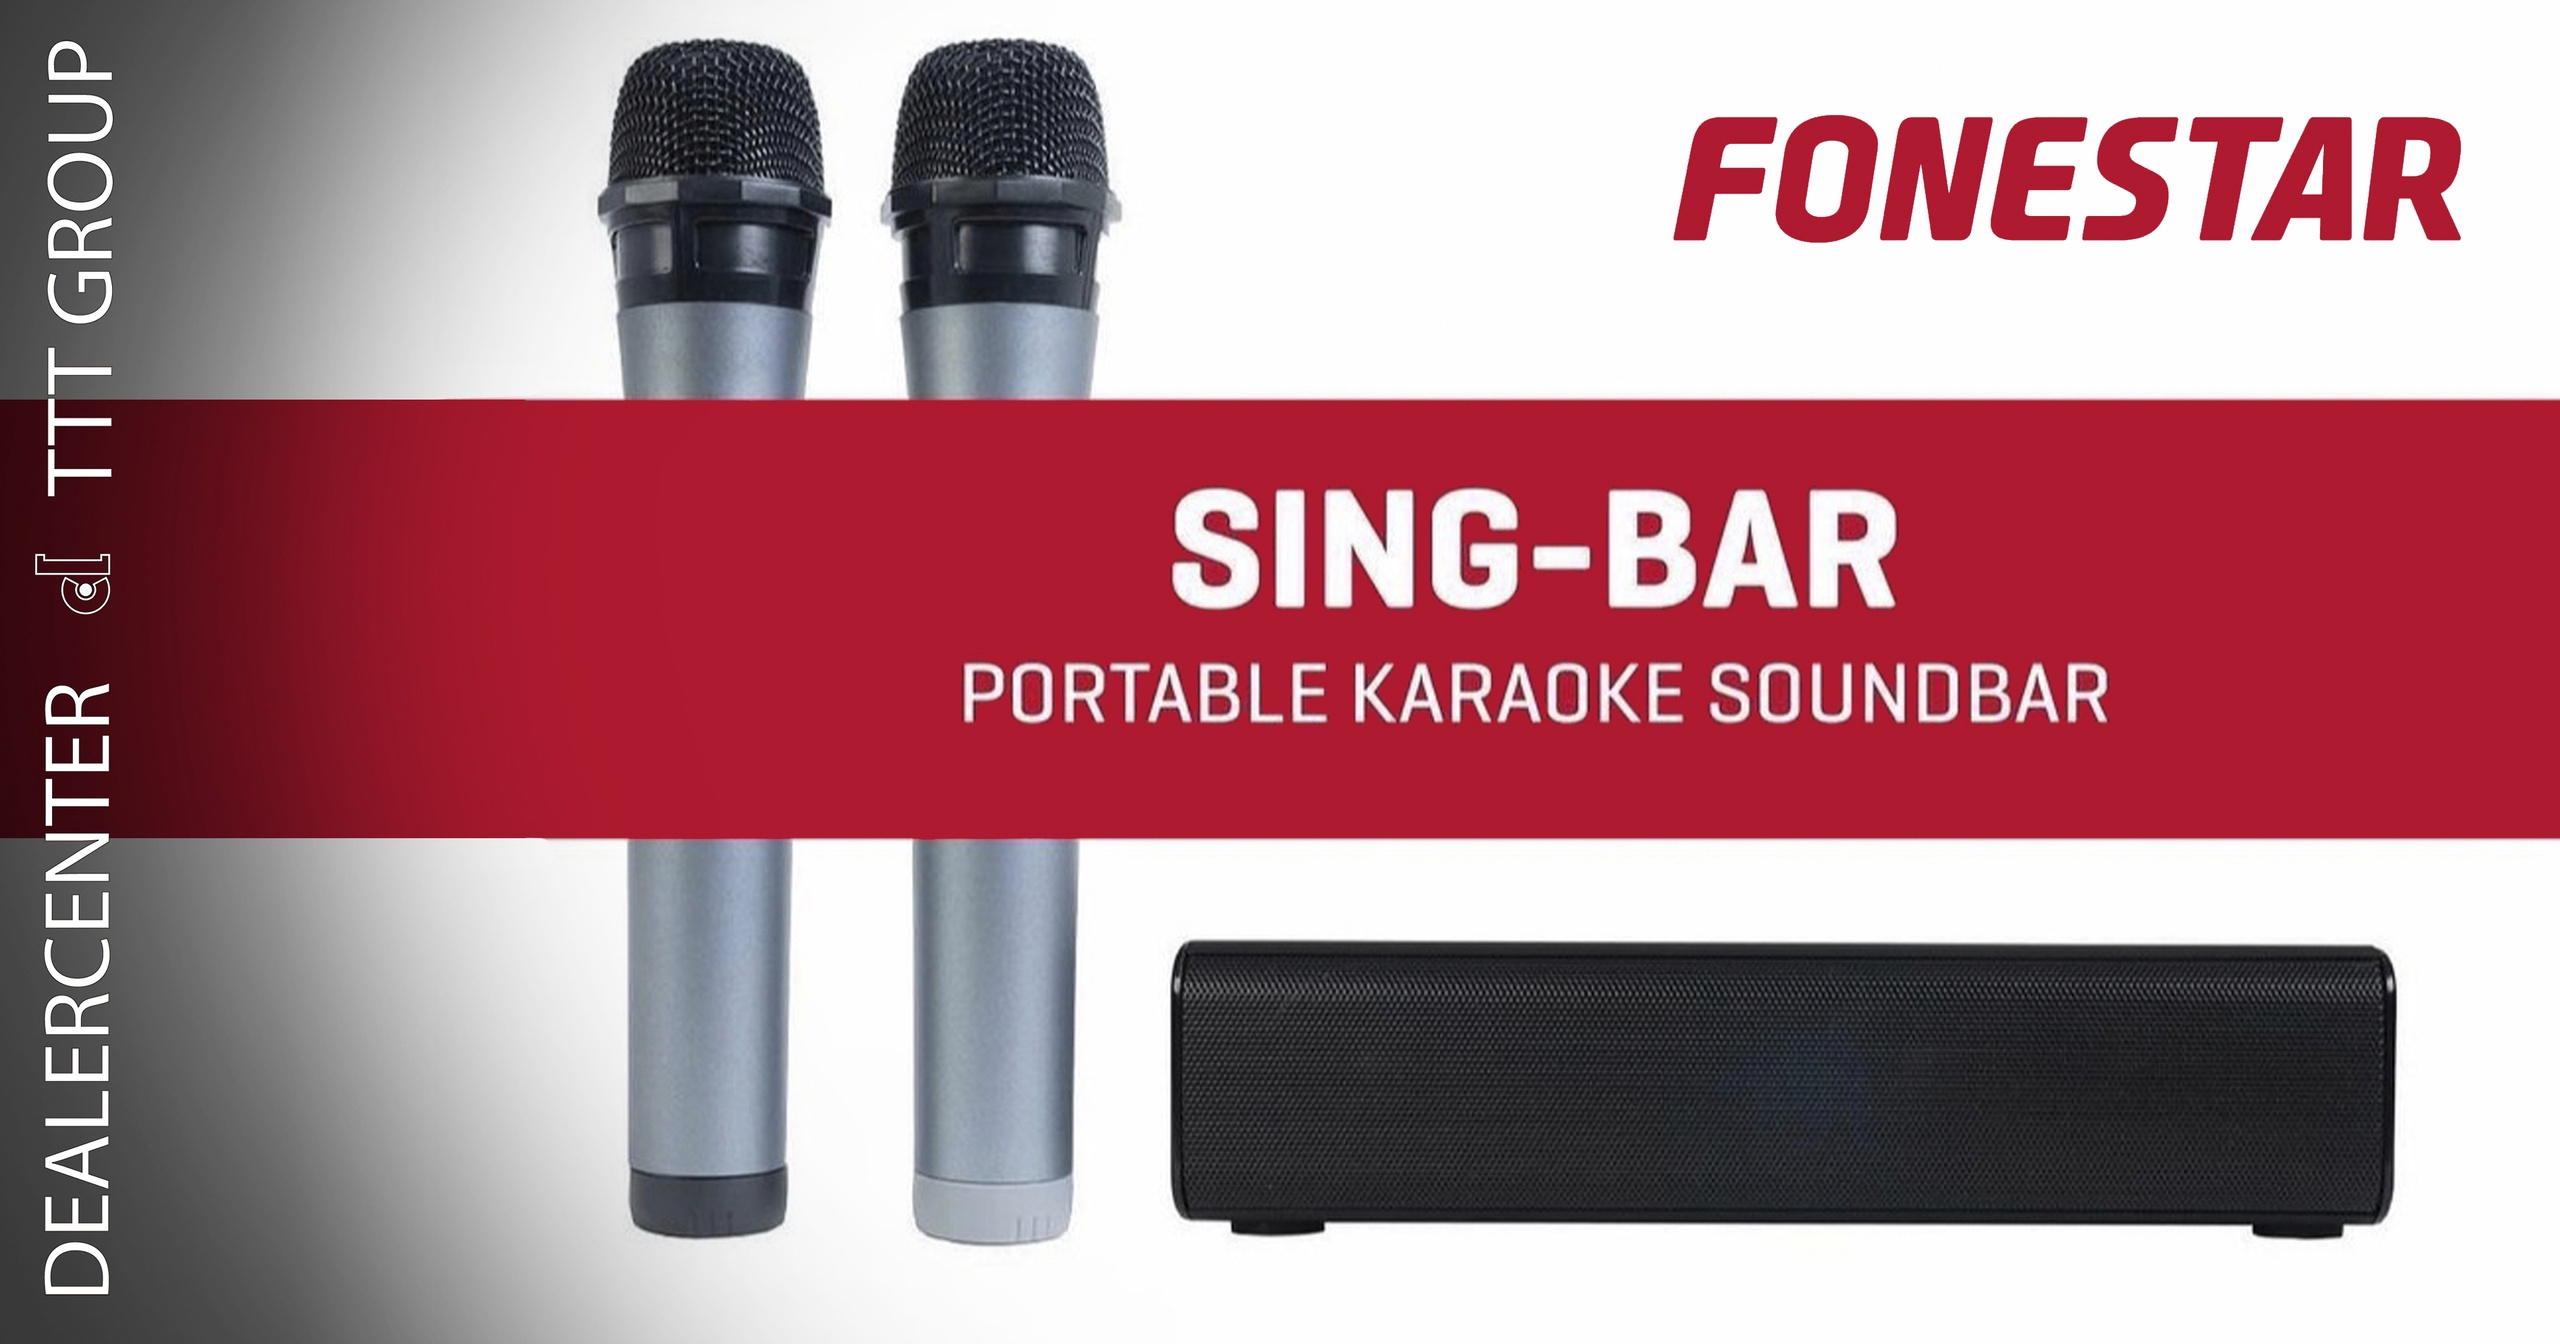 Fonestar sistemas представляет профессиональную портативную систему караоке SING-BAR